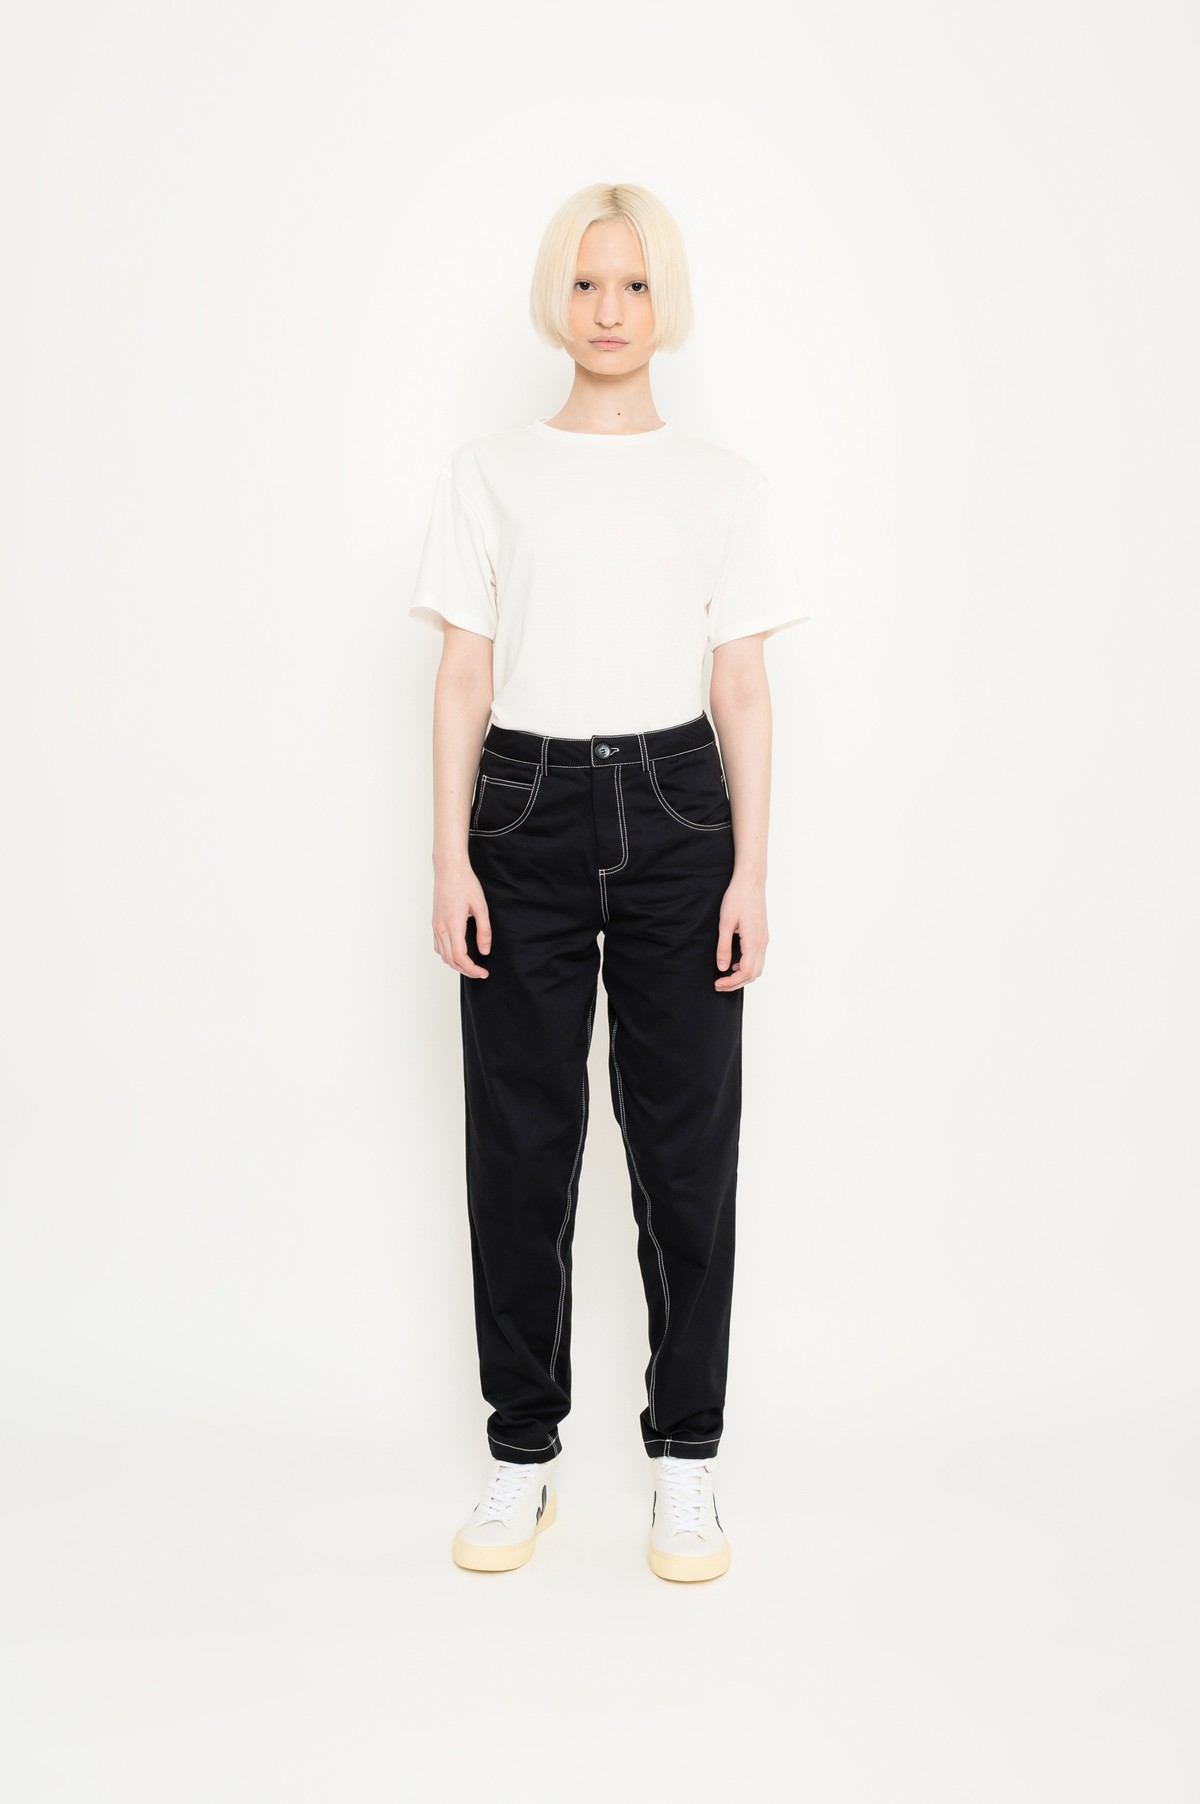 calça estilo 5 pockets em algodão | 5 pockets cotton pants